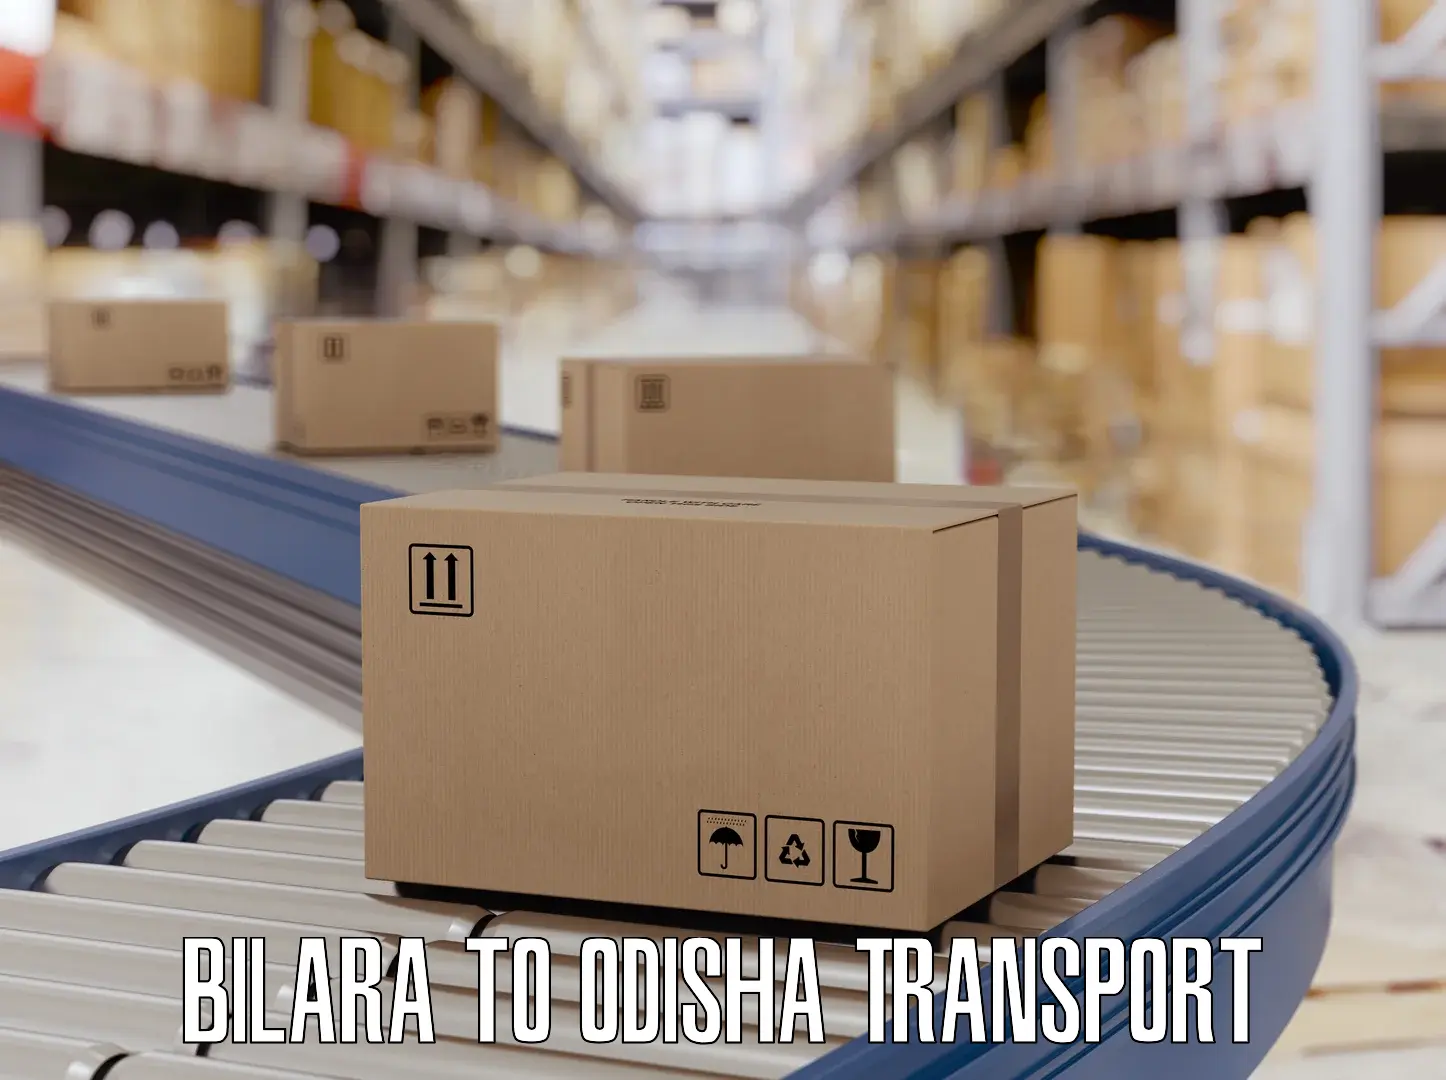 Daily transport service Bilara to Melchhamunda